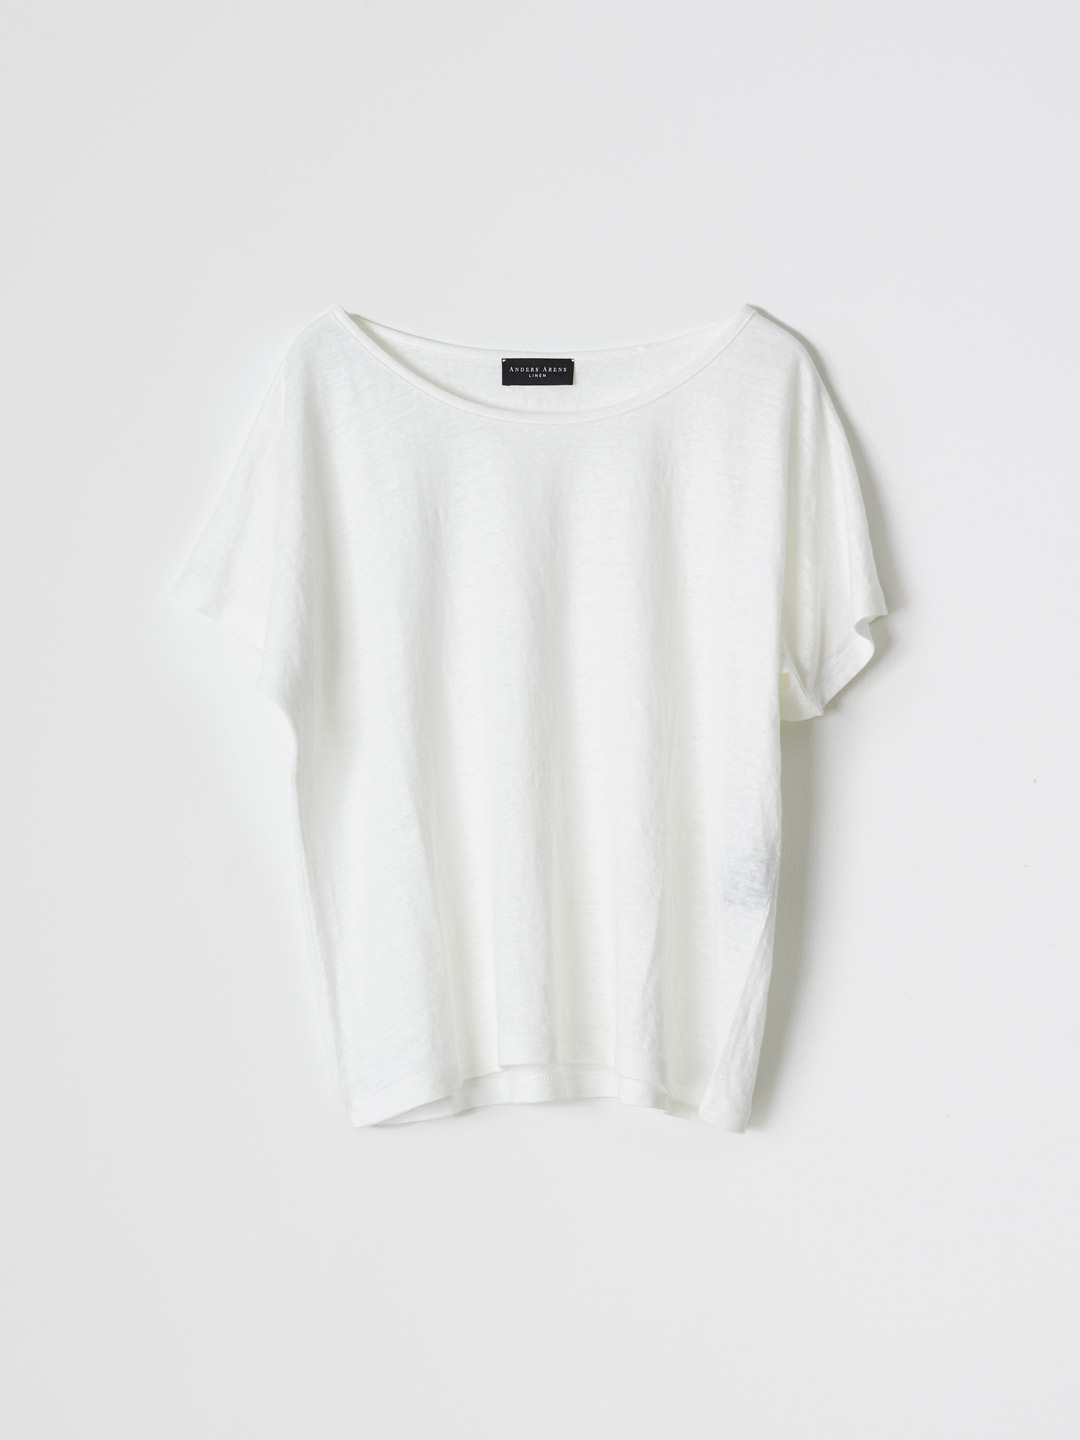 MADRAGUE Short Sleeve Boat Neck T-shirt - White